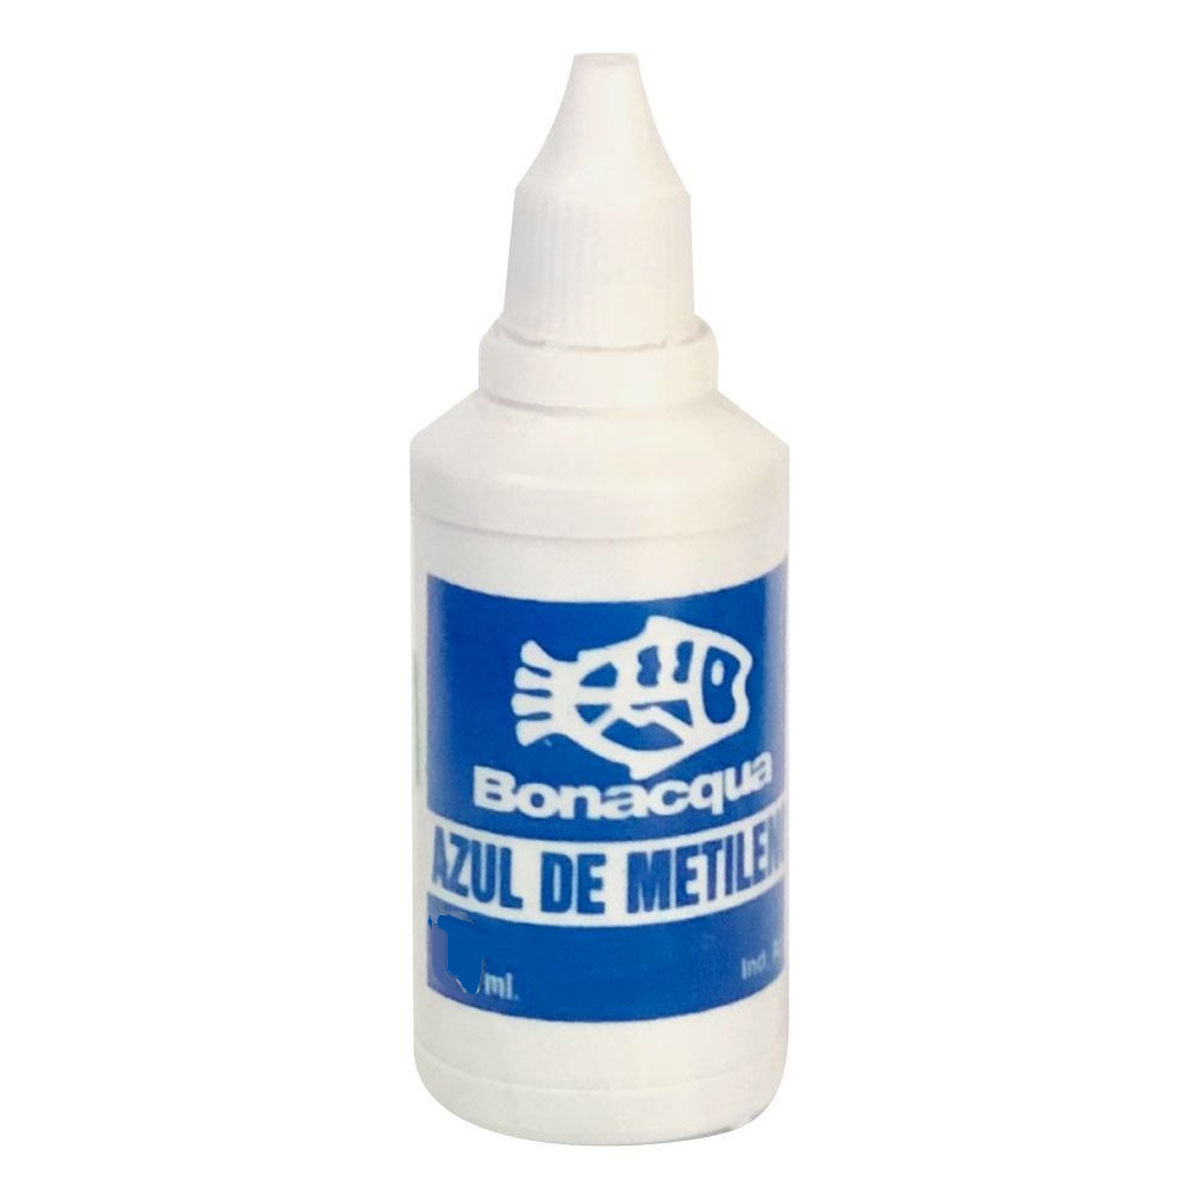 Bonacqua Azul de Metileno 50ml - Desinfectante - Acuario Oasis